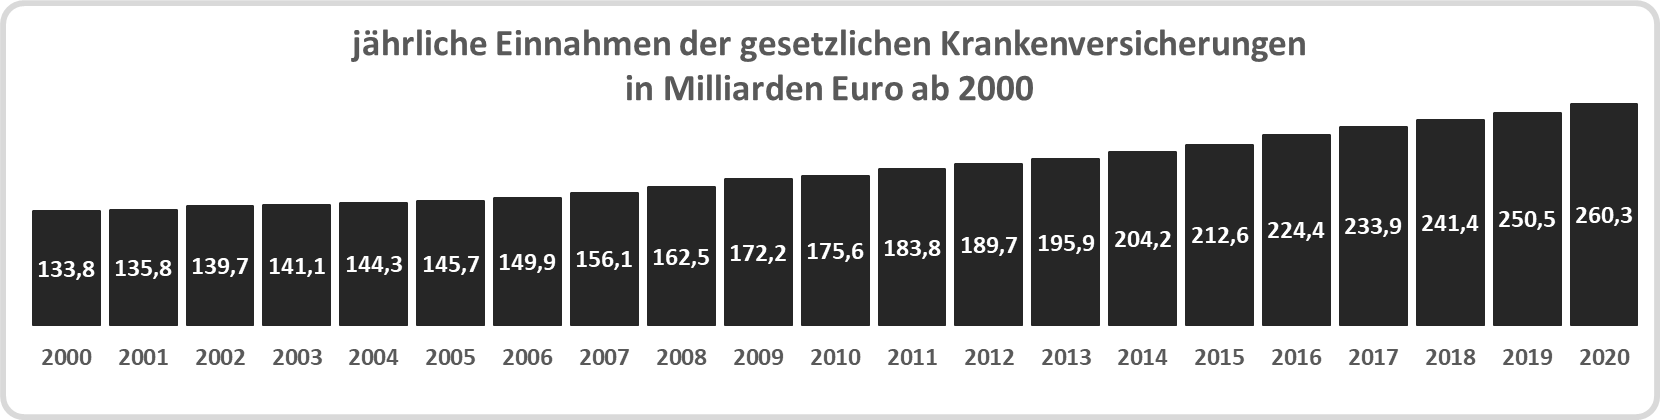 jährliche Einnahmen der Krankenversicherungen ab 2000 in Milliarden Euro